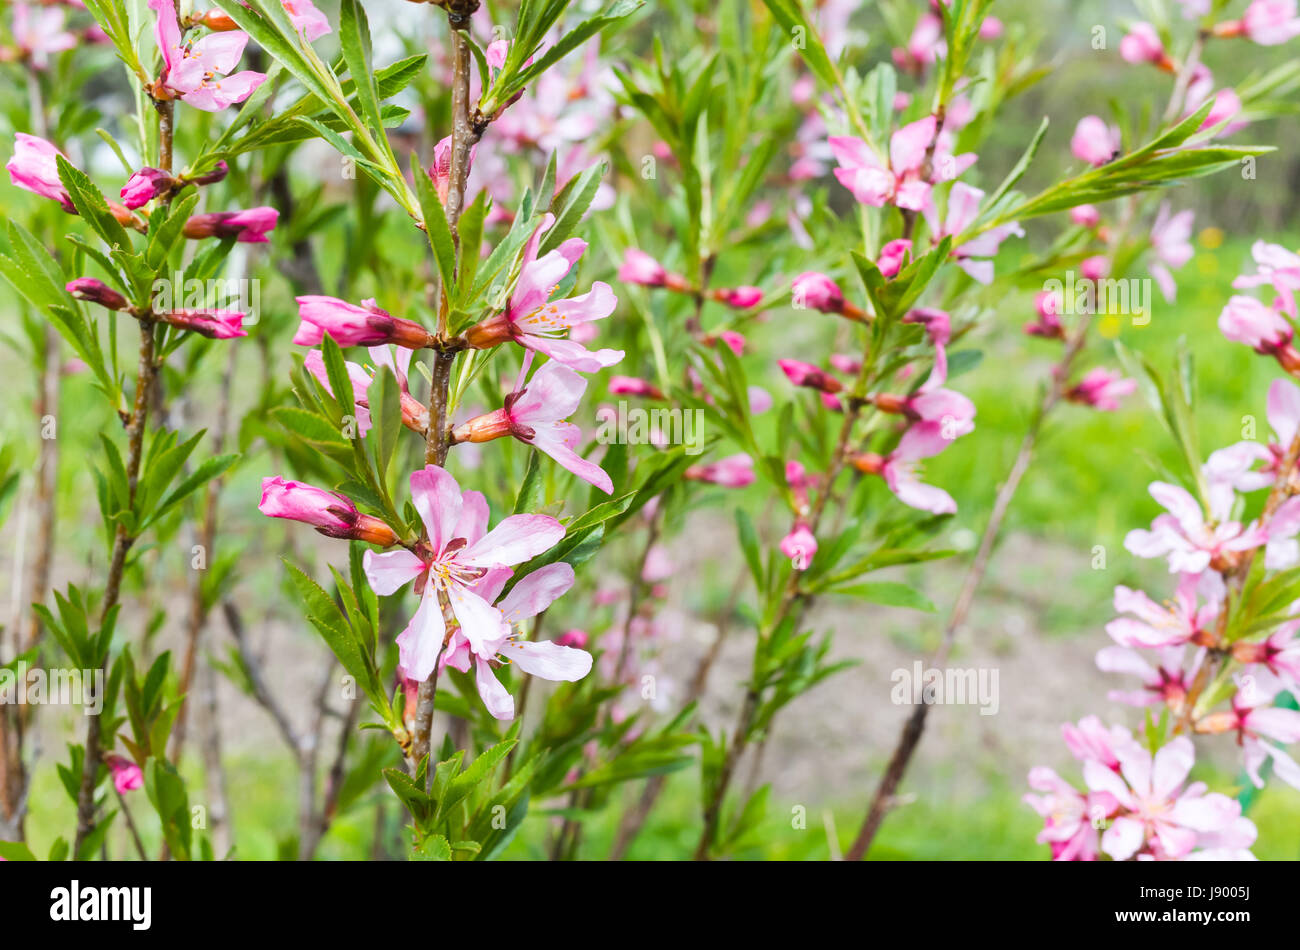 Amandier en fleurs. Fleurs rose vif sur les branches dans un jardin de printemps, photo gros plan avec selective focus Banque D'Images